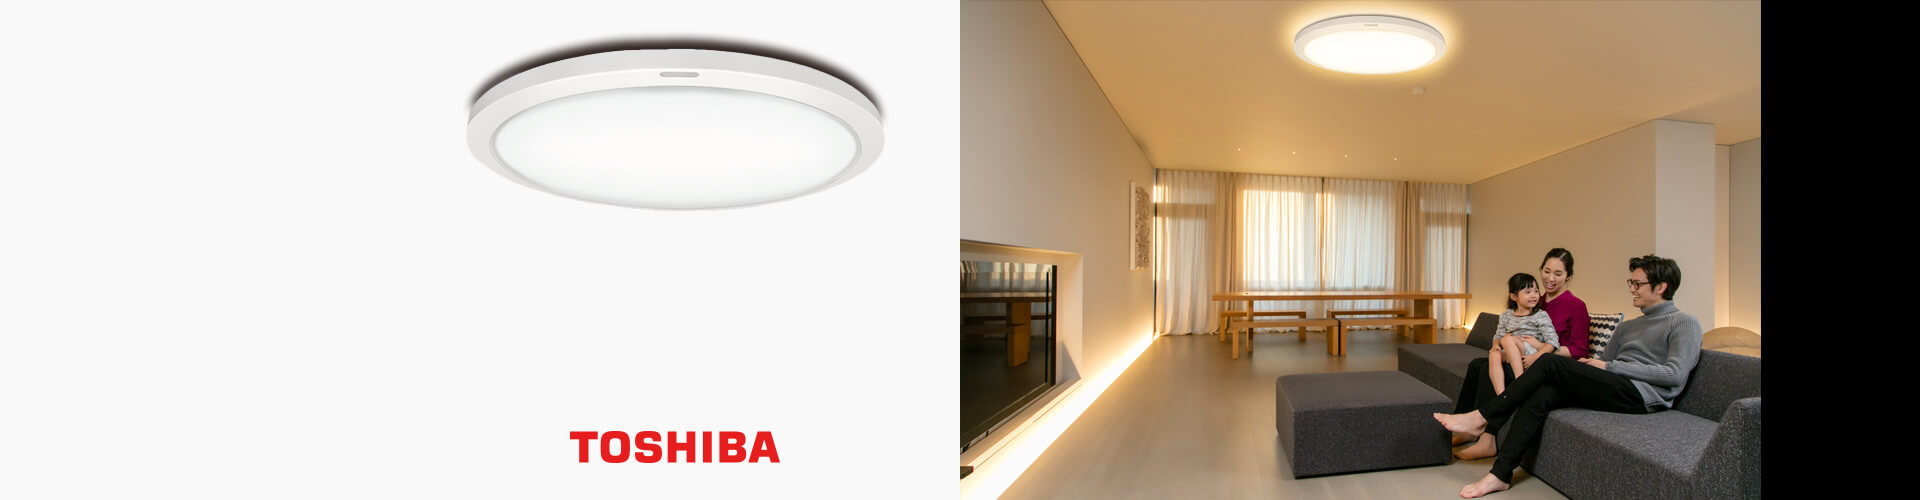 Đèn trần LED Toshiba NLEH12015A | Đồ Nhật Nội Địa